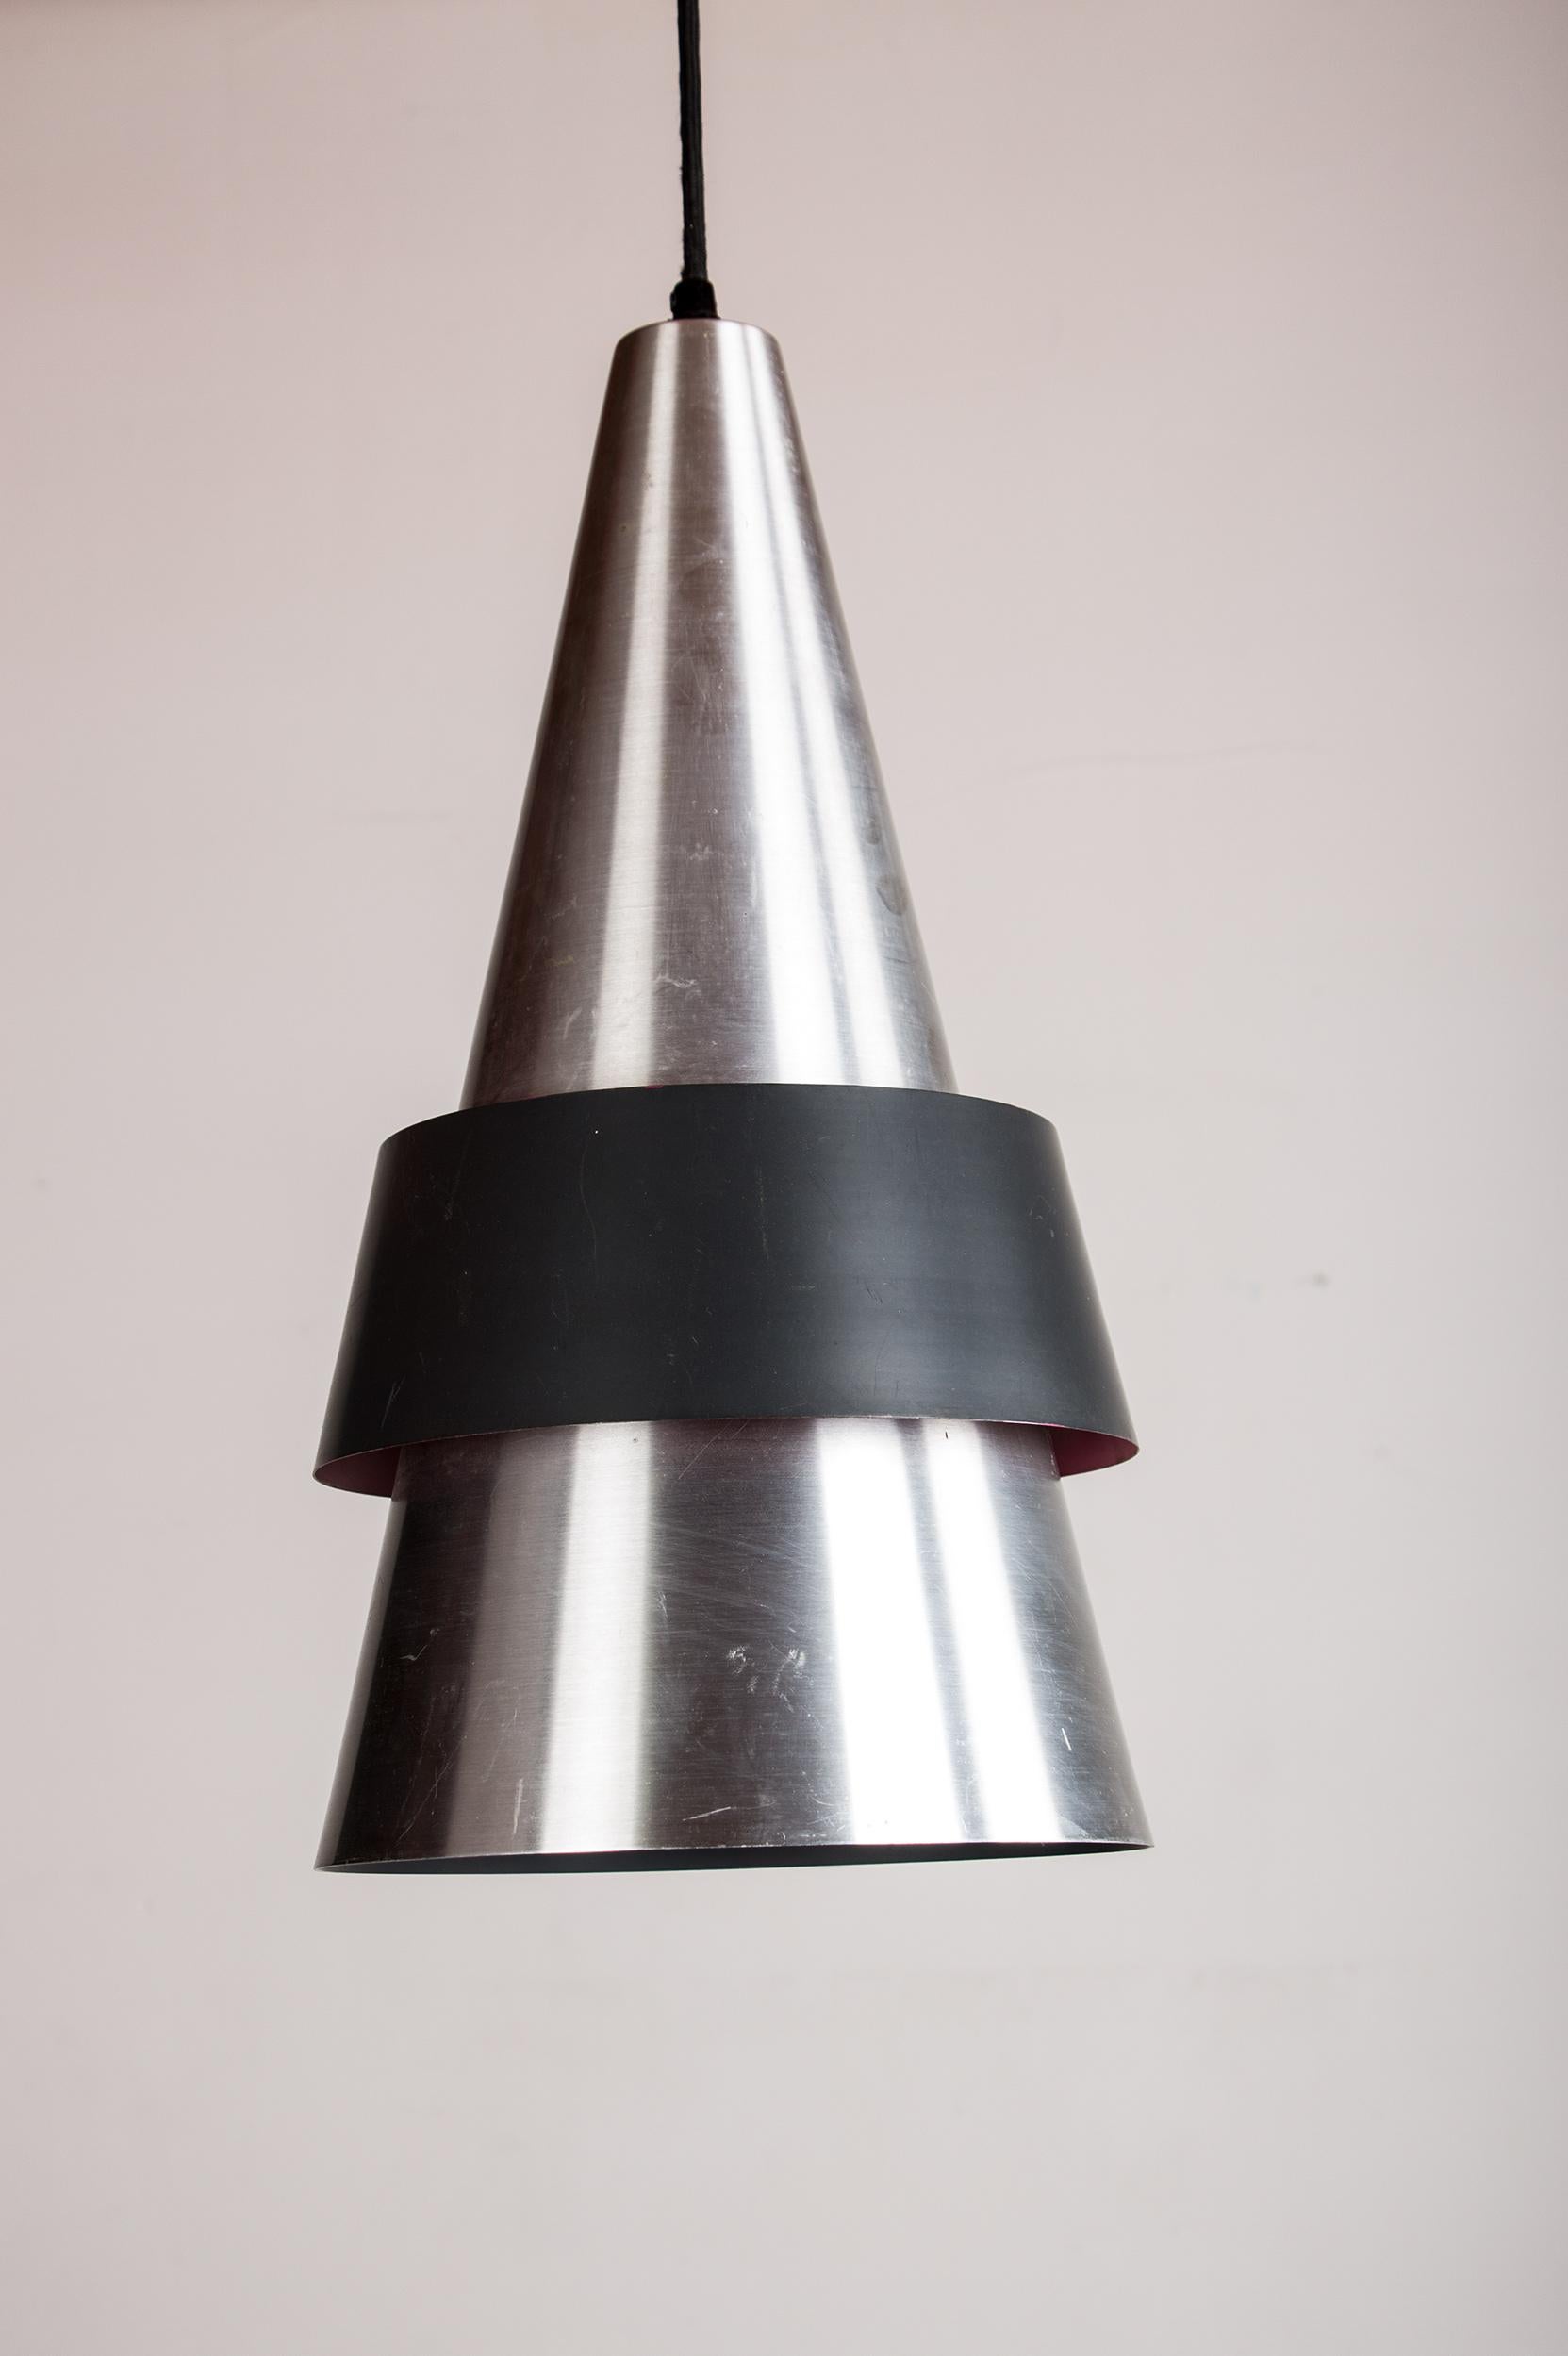 Superbe suspension scandinave. Composé d'un grand cône en aluminium doublé d'un cône en métal noir grainé, il offre un éclairage nuancé très intime. Hauteur totale largement réglable selon les besoins (plus de 150 cm).
